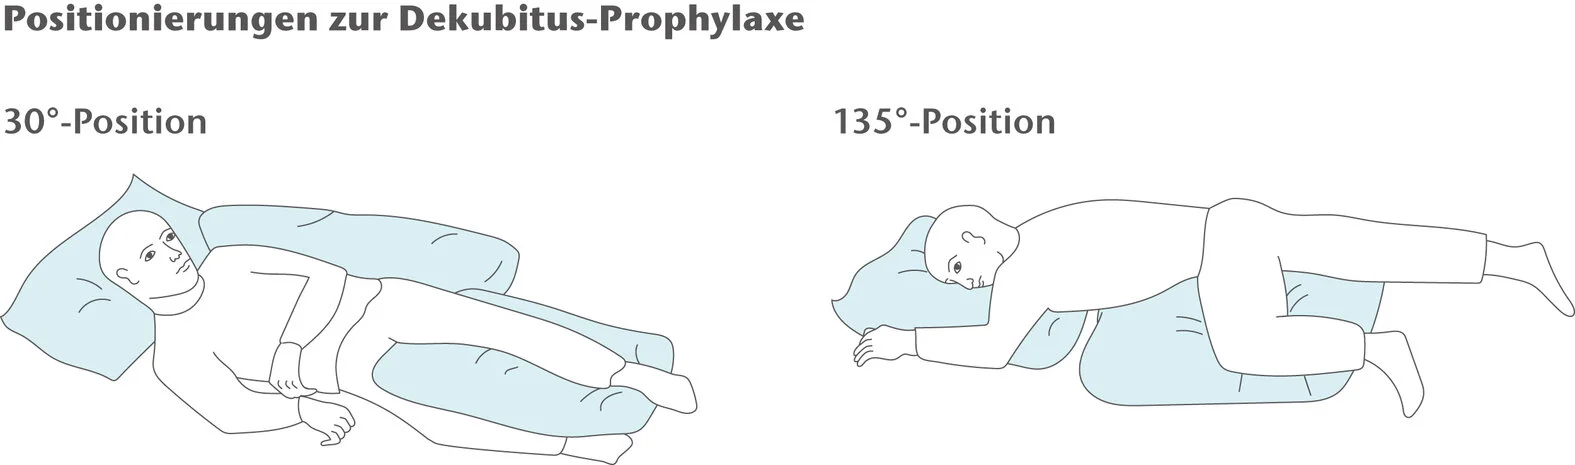 Positionierungen zur Dekubitusprophylaxe: 30°- und 135°-Lagerung